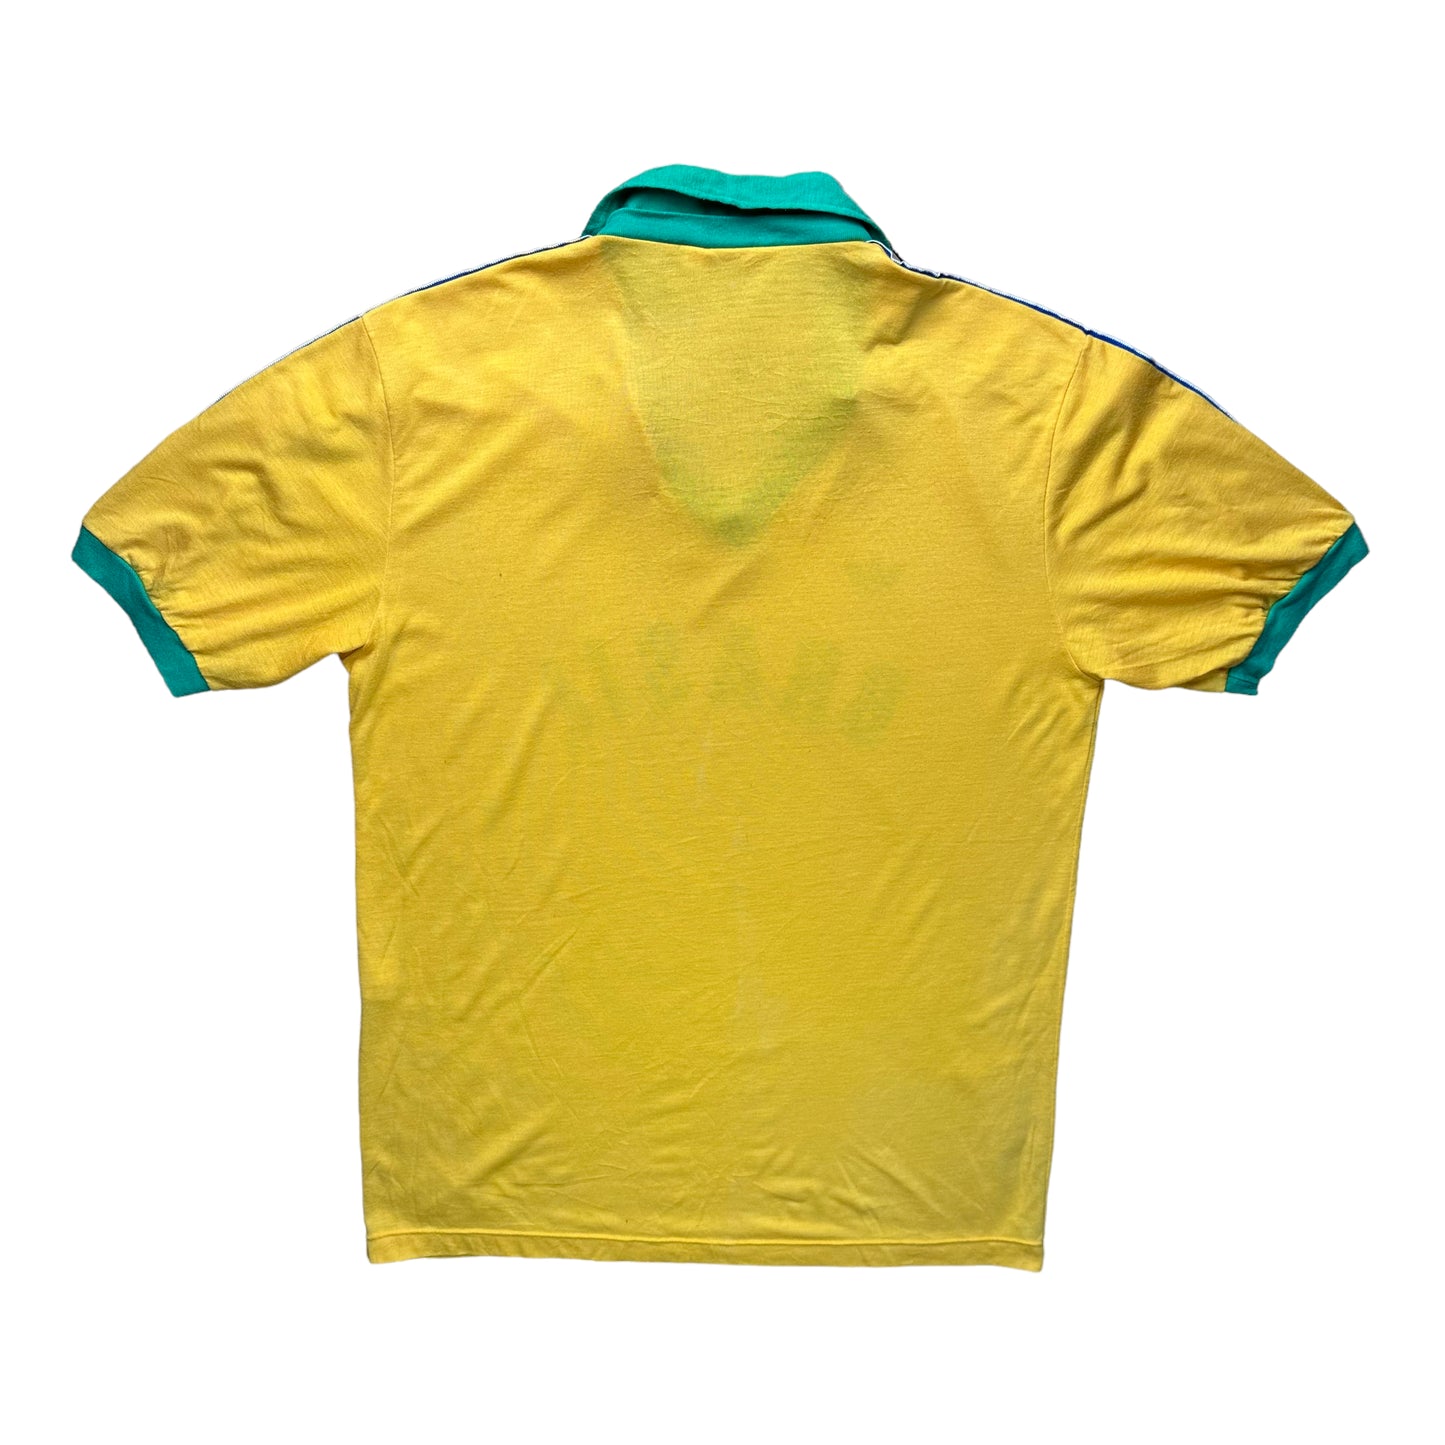 Brazil 1986 Olympics Home Shirt (M)